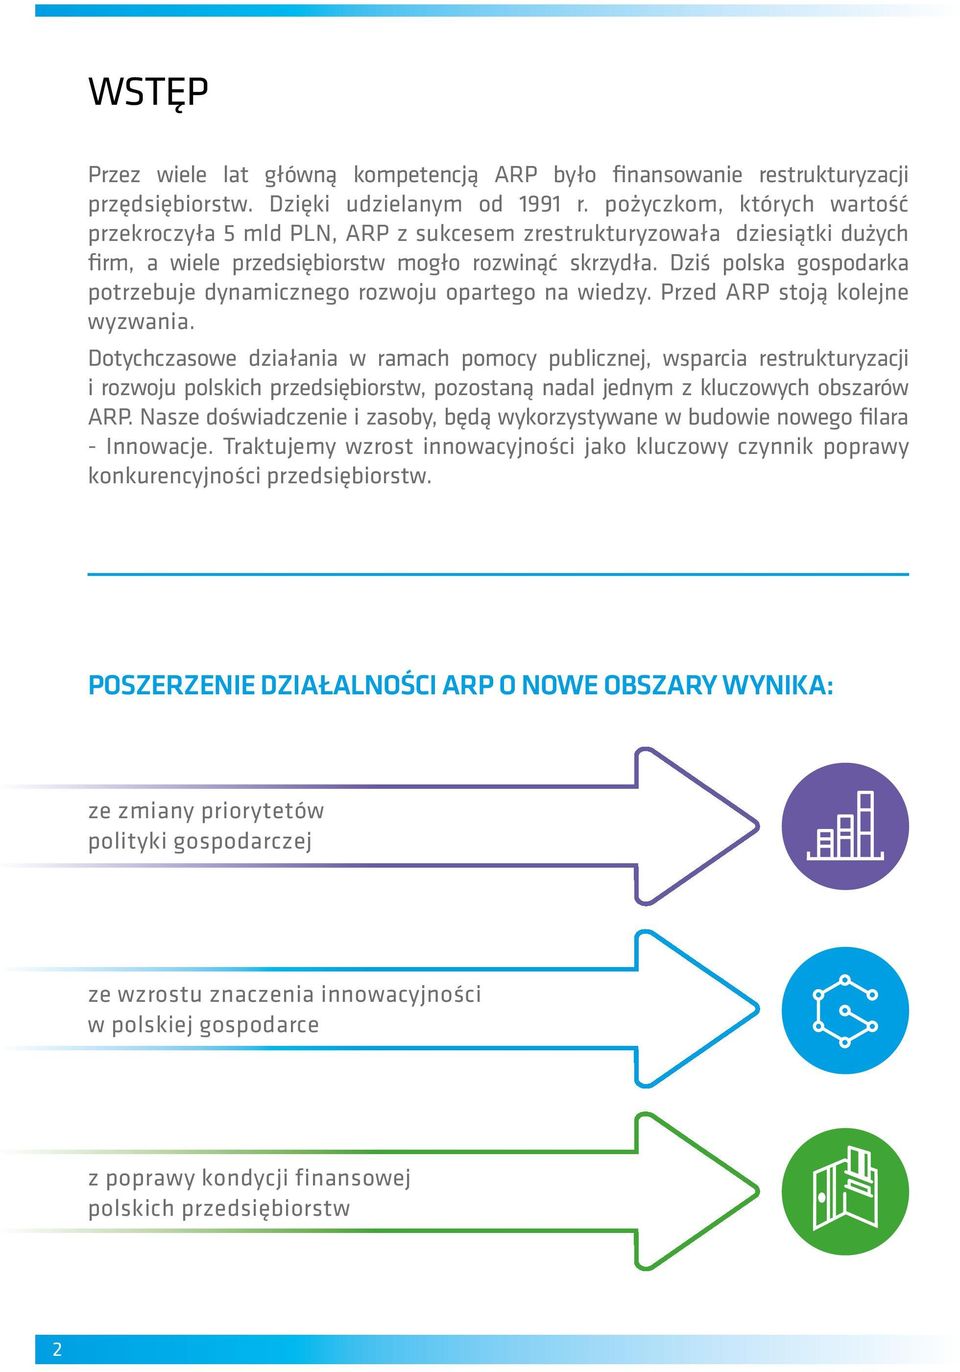 Dziś polska gospodarka potrzebuje dynamicznego rozwoju opartego na wiedzy. Przed ARP stoją kolejne wyzwania.